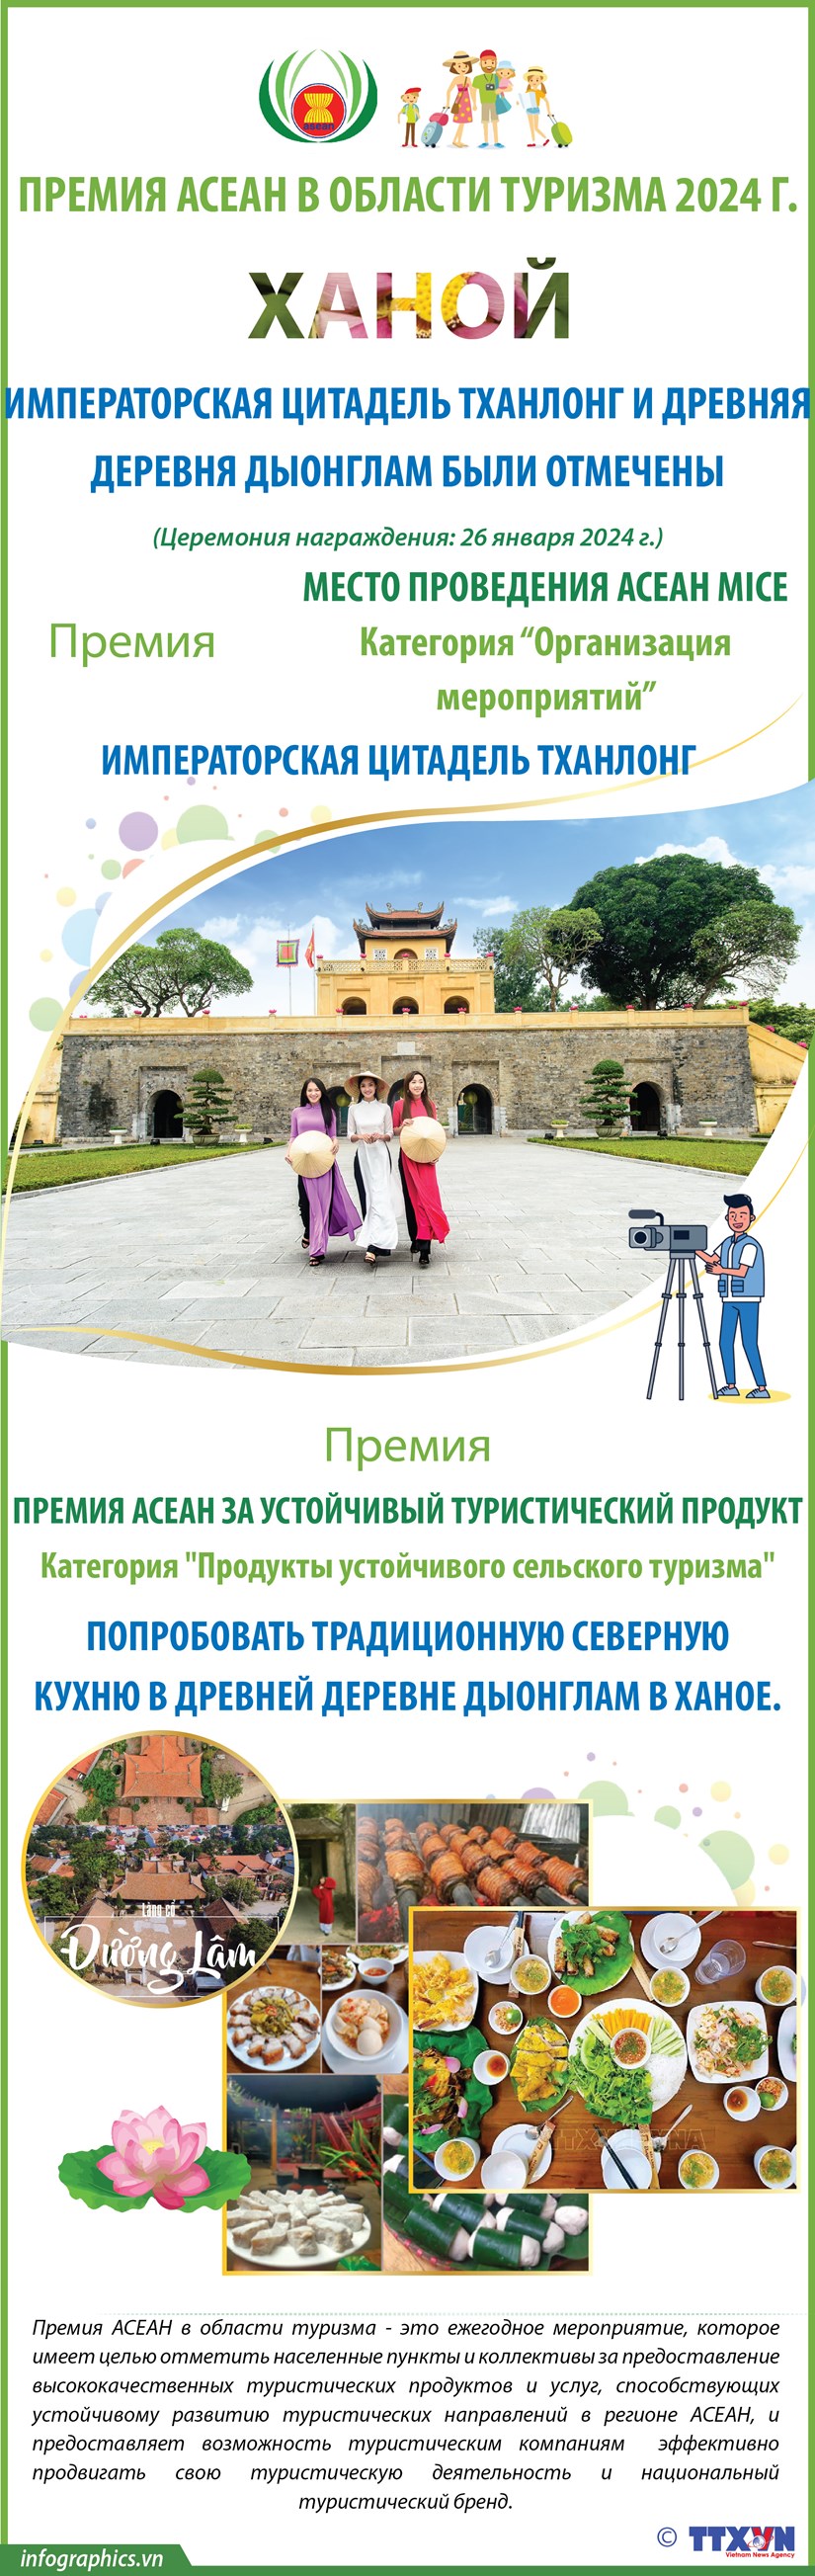 Императорская цитадель Тханлонг и древняя деревня Дыонглам были отмечены в премии АСЕАН в области туризма 2024 г. hinh anh 1